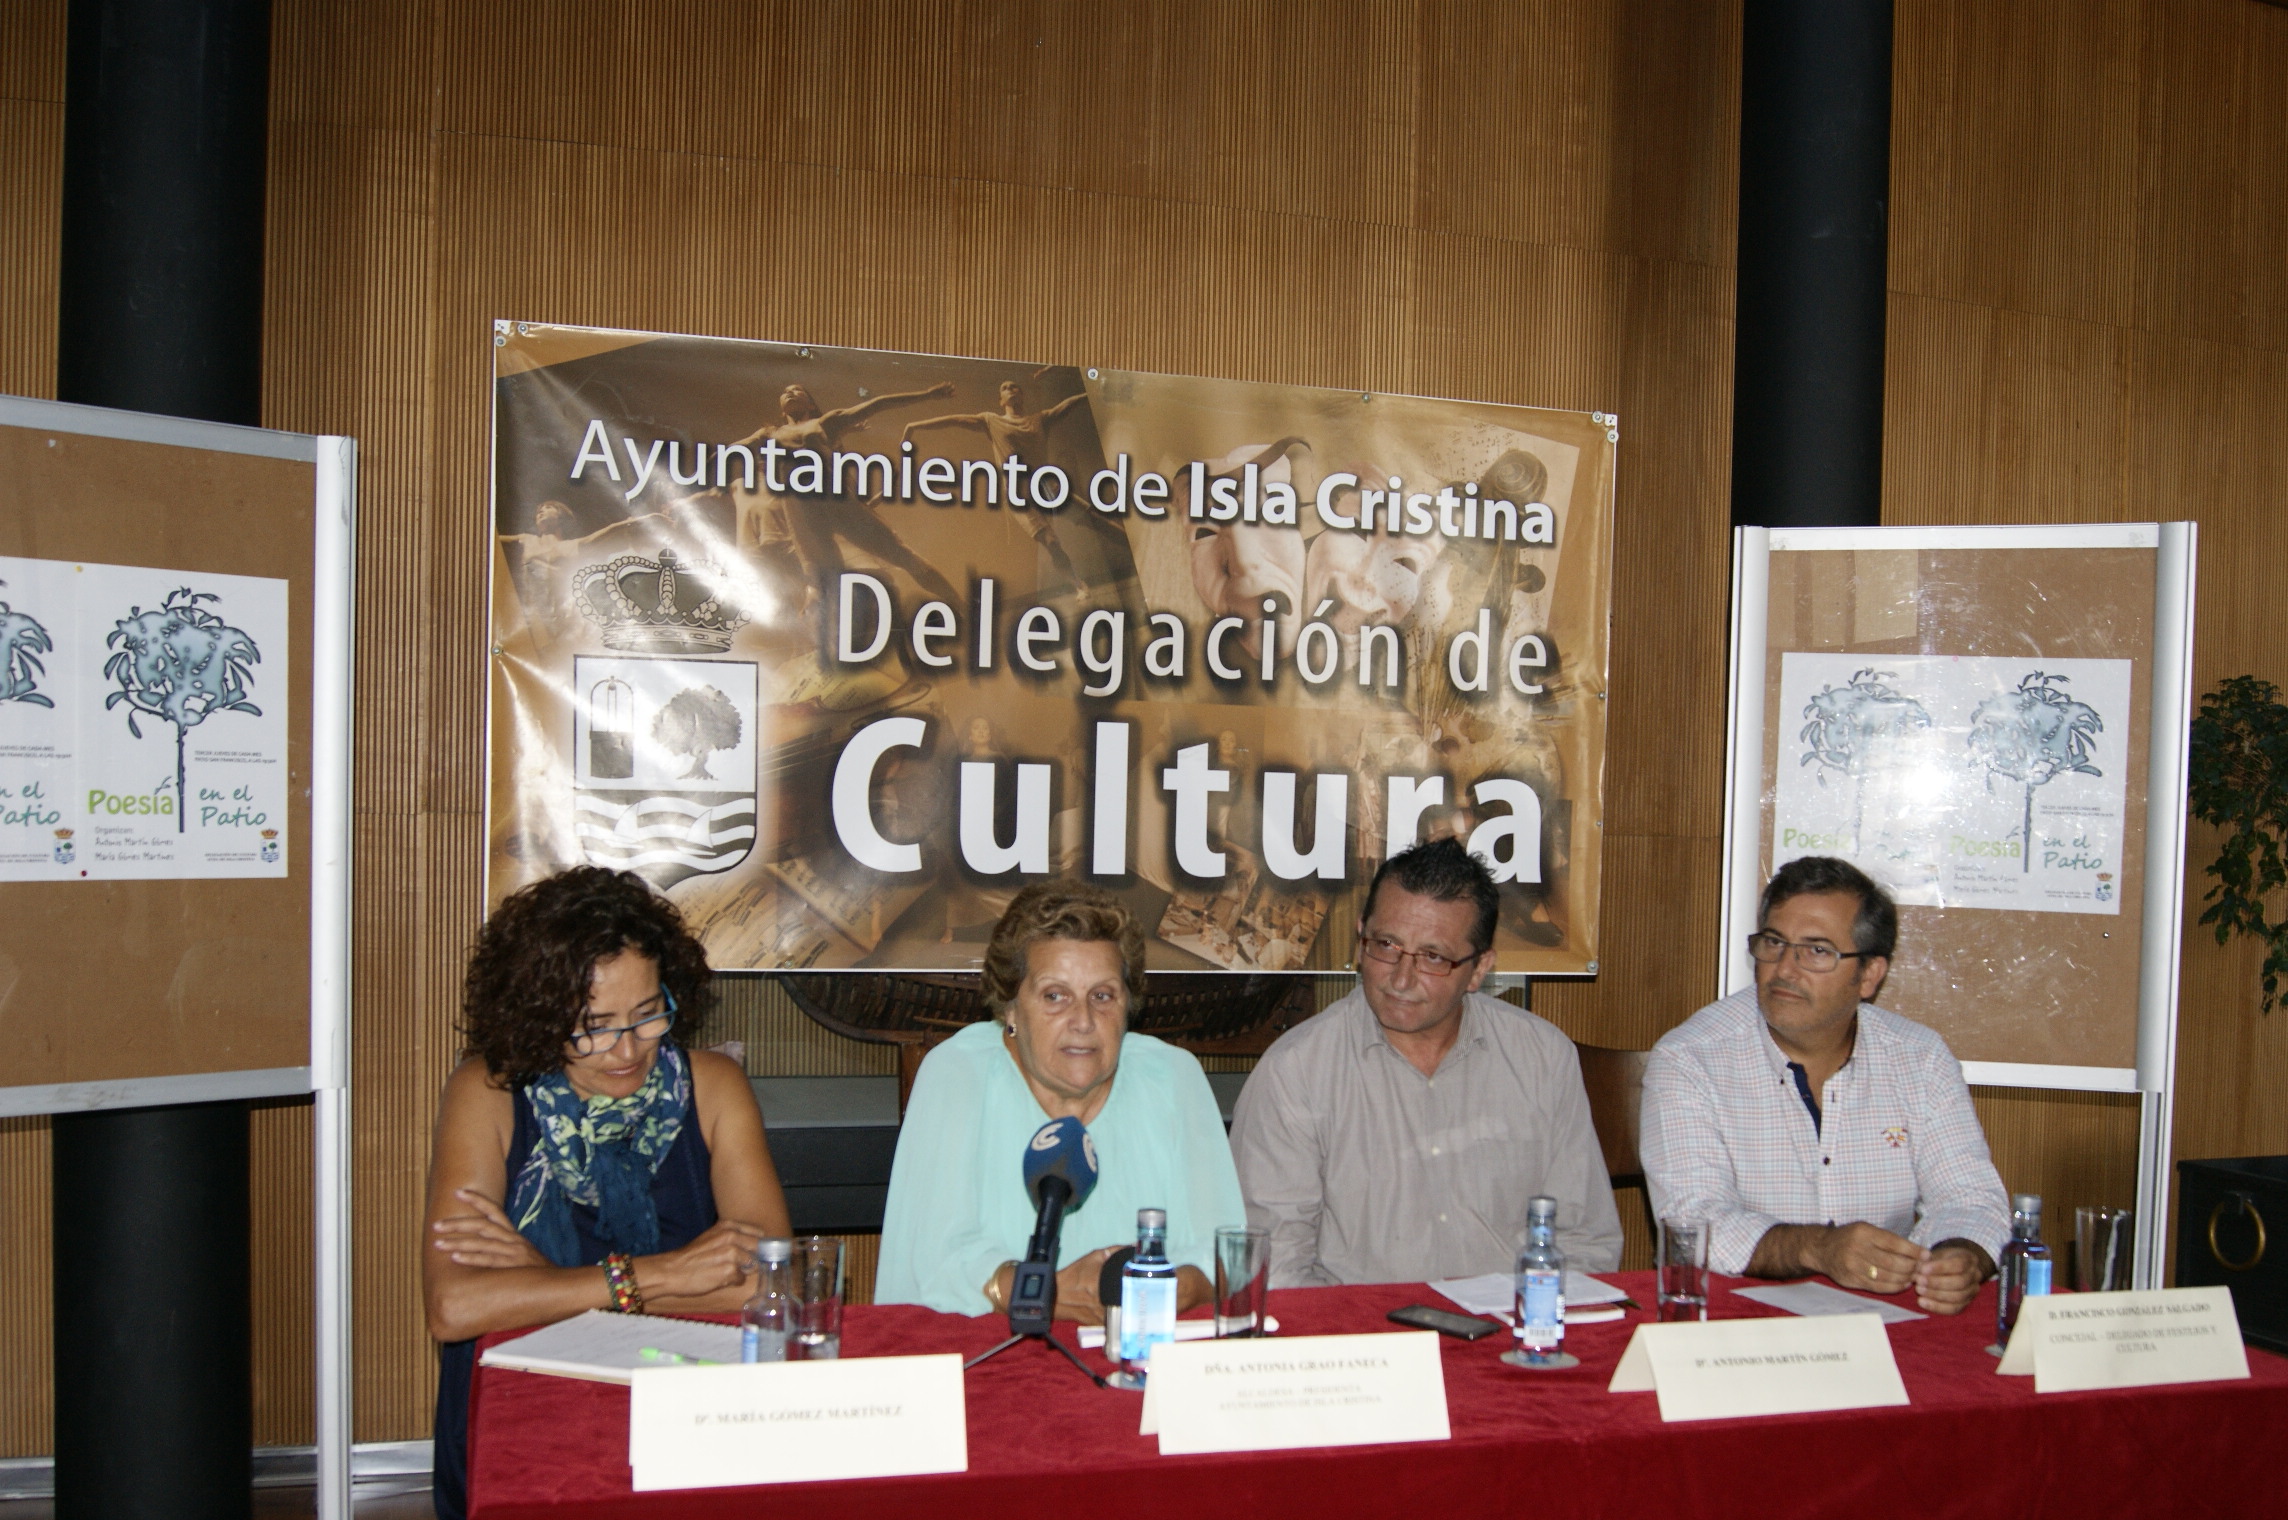 La Alcaldesa en el momento de su intervencion junto a Antonio Martin, Maria Gomez y Francisco Gonzalez, concejal de Cultura